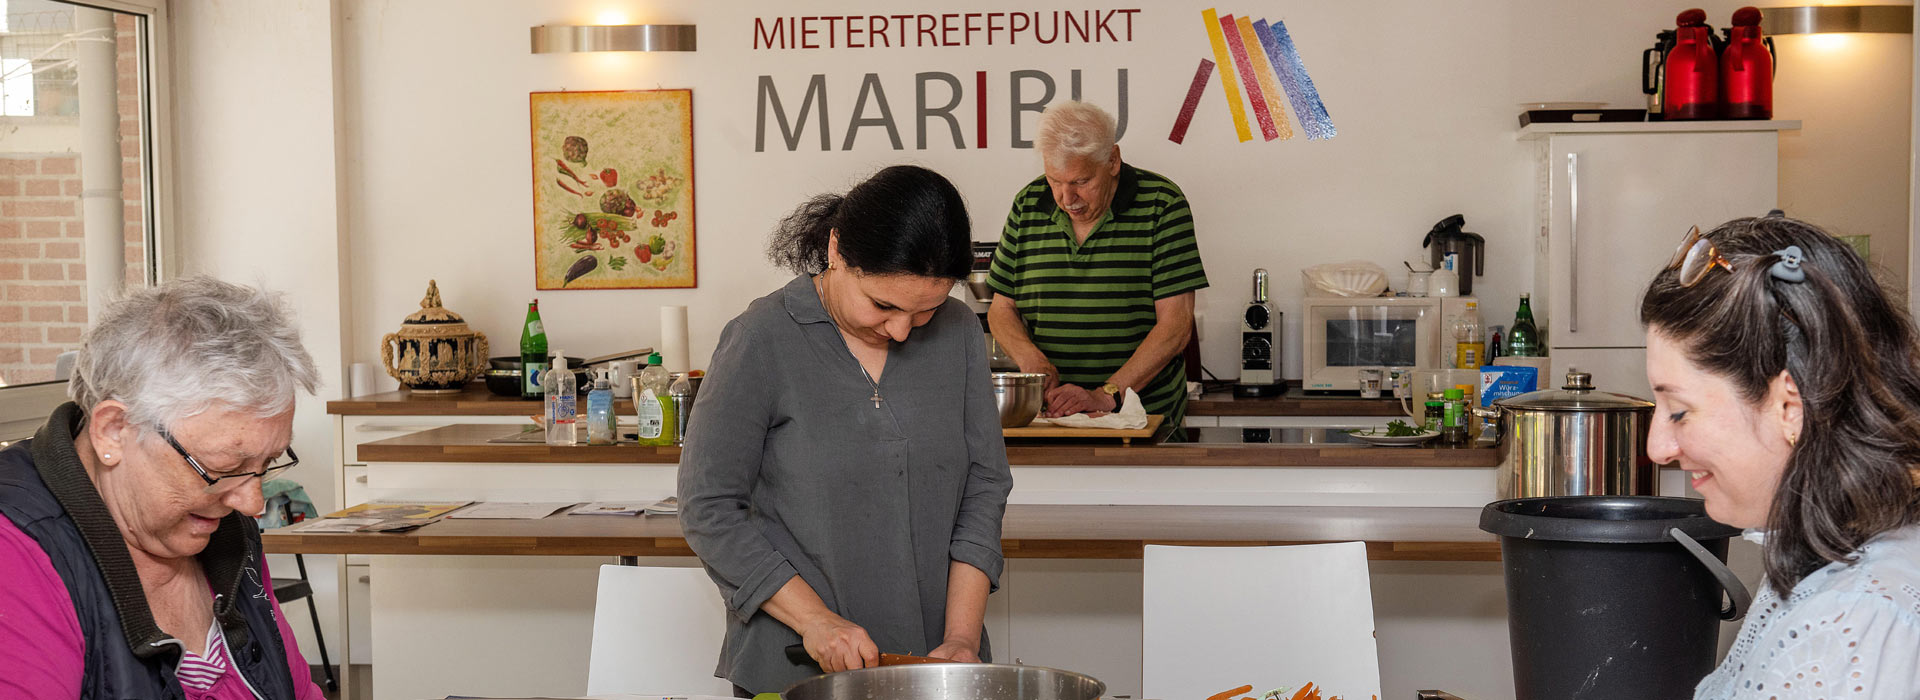 MARIBU - Begegnungsstätte Marienburger Straße in Neuss